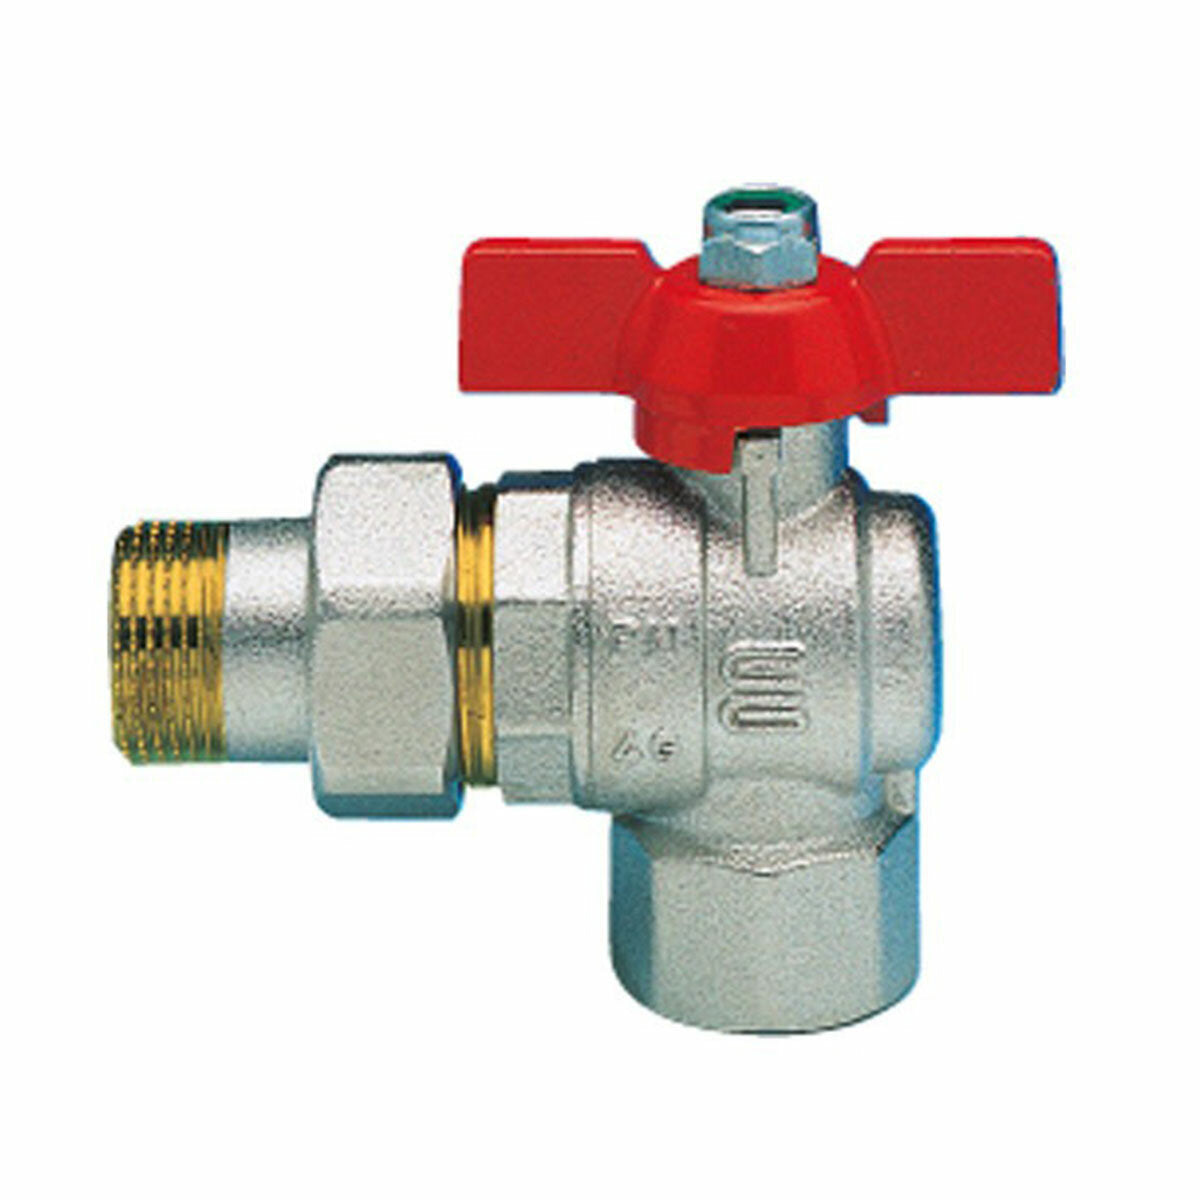 Enolgas Basic ball valve for 3/4" boiler manifold